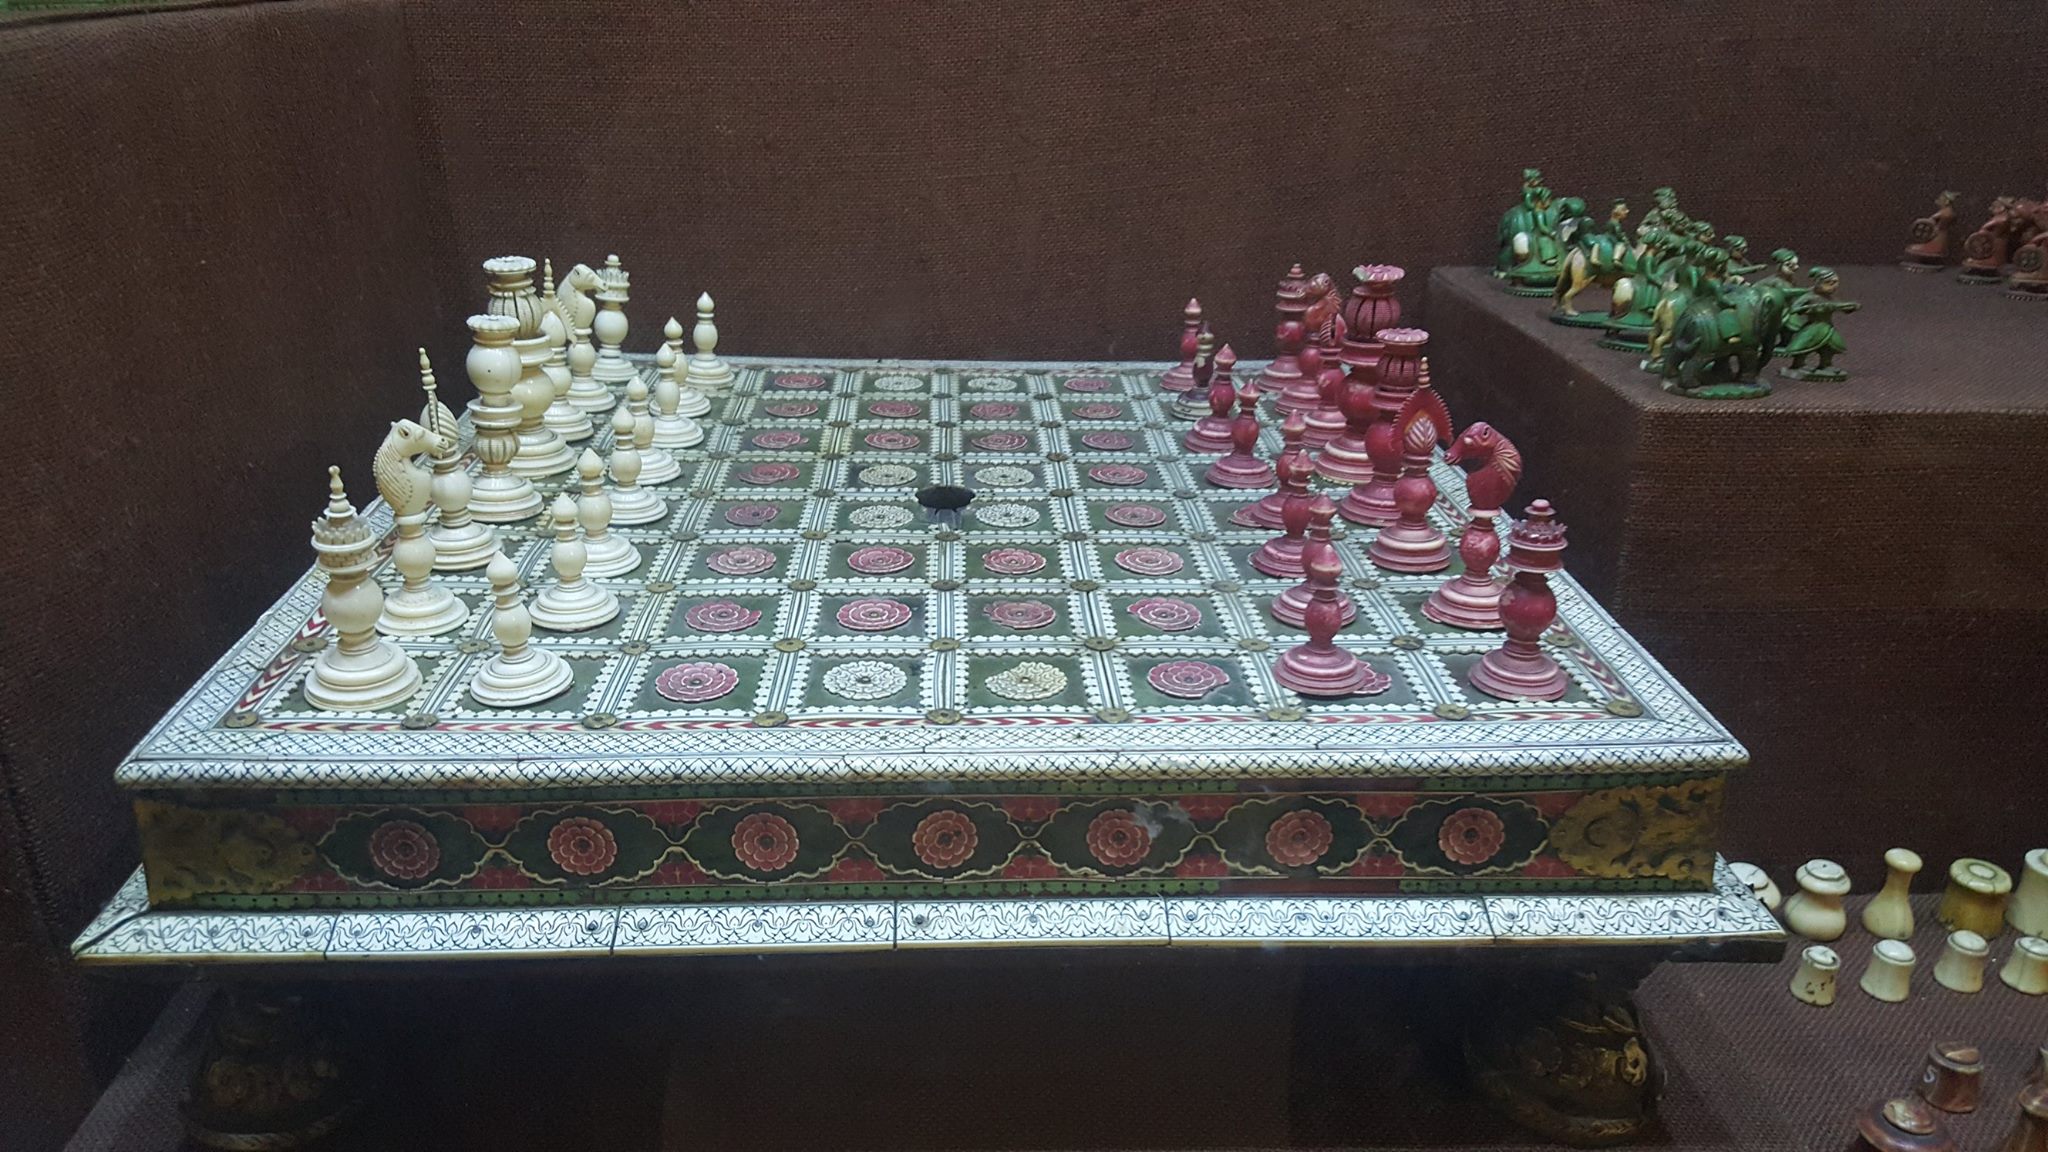 Un jeu d'échecs